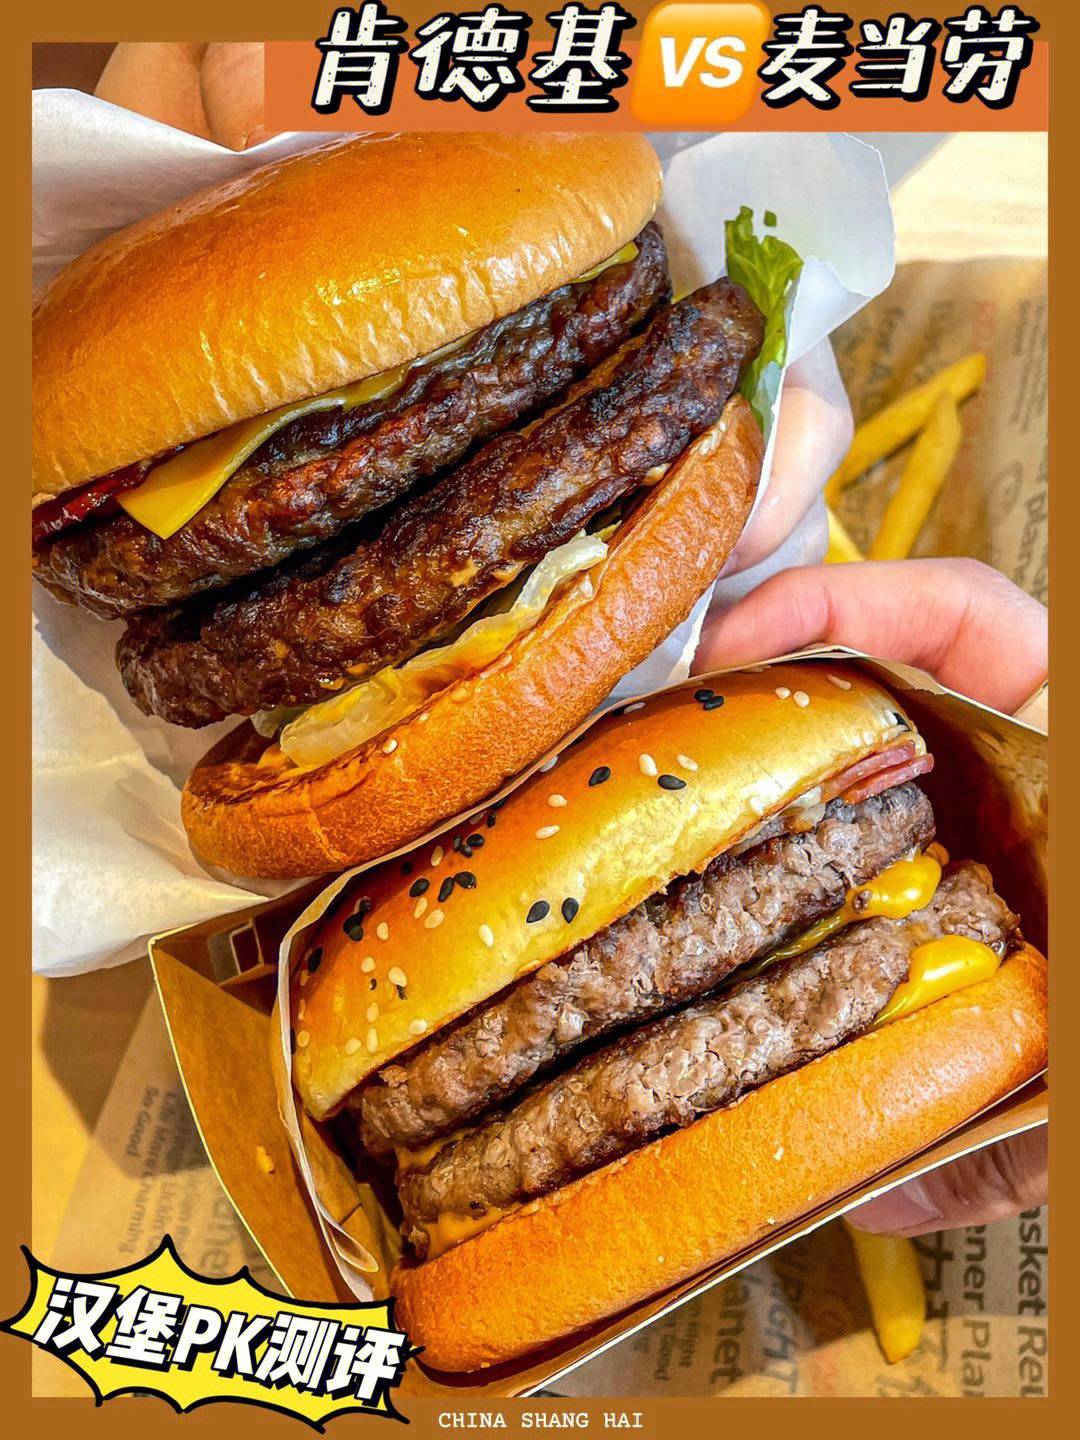 肯德基麦当劳真实测评哪家汉堡更好吃71